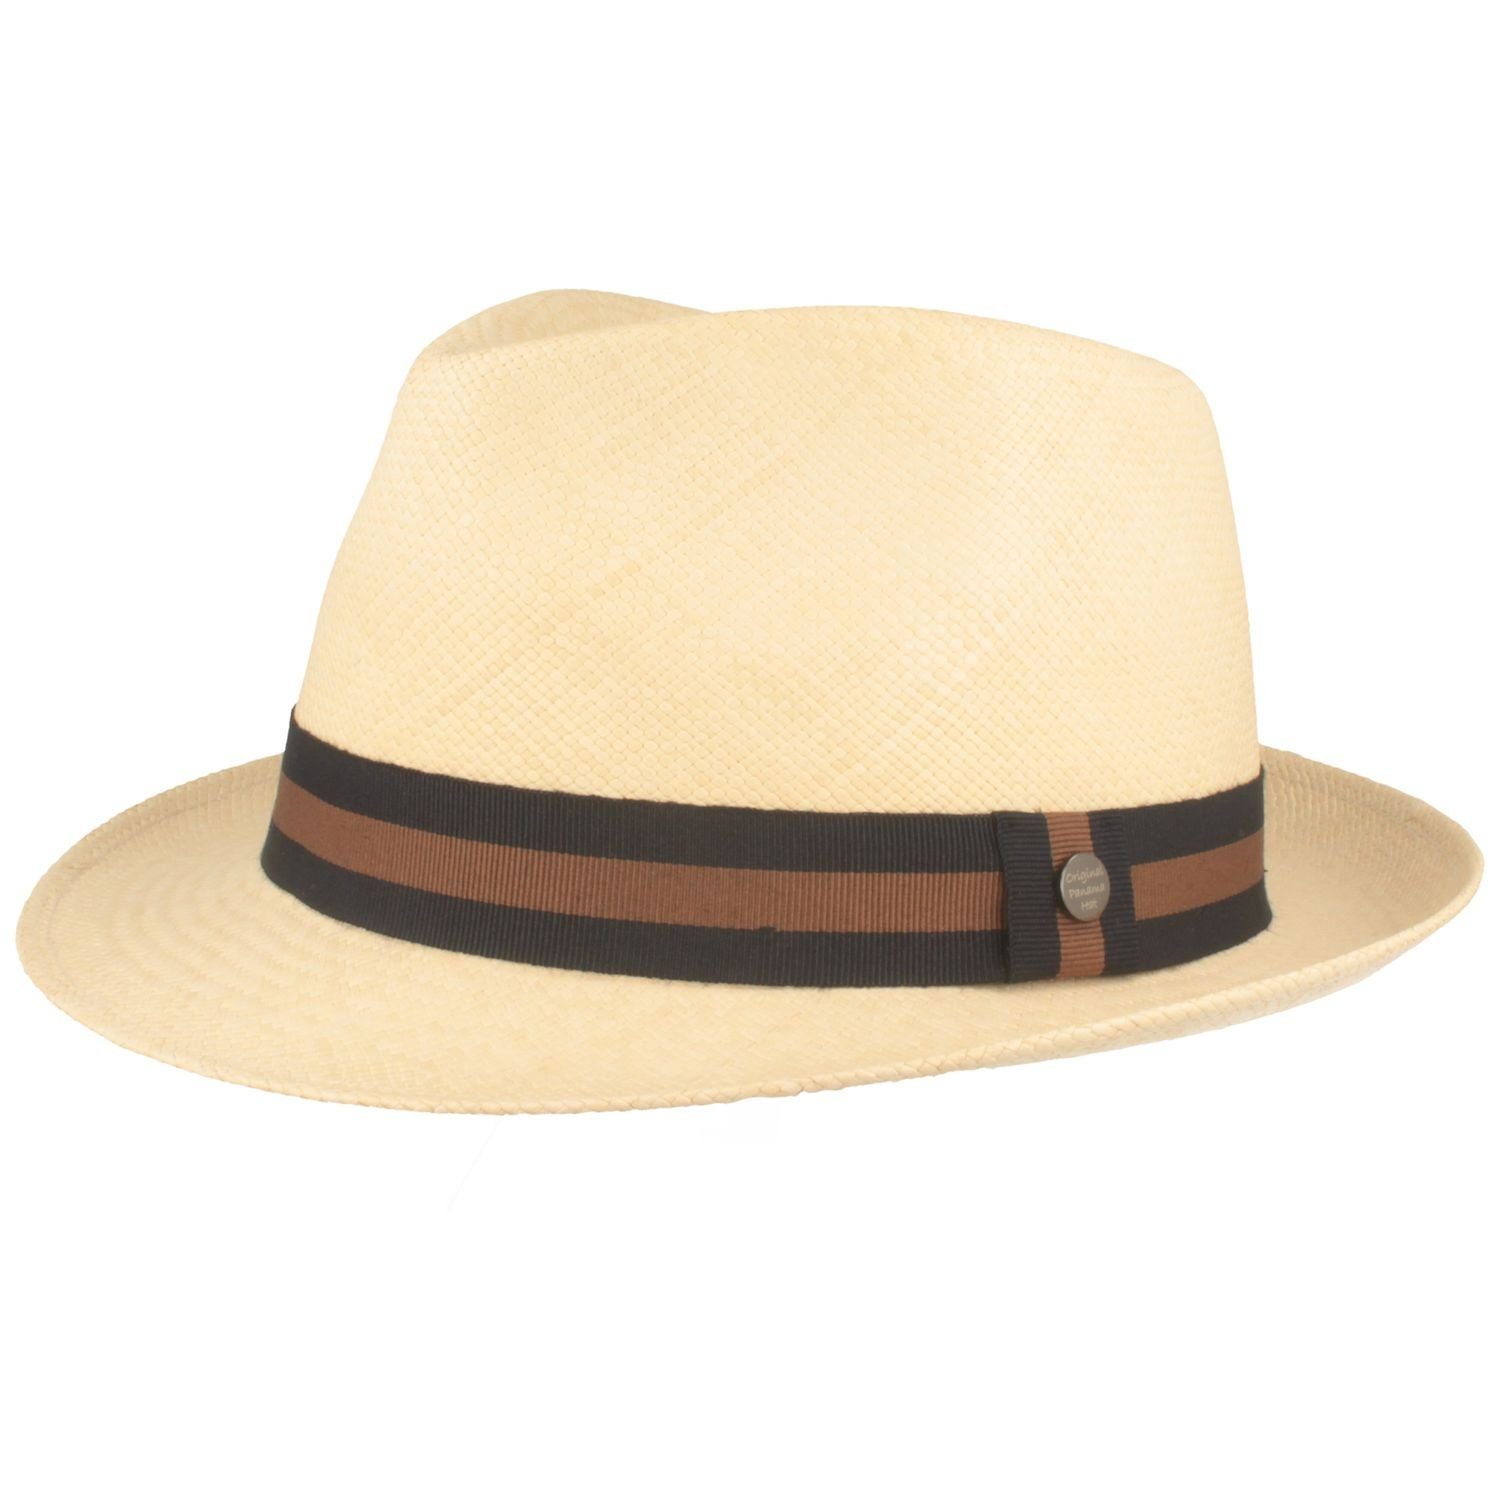 Breiter Strohhut Trilby Panama Hut mit moderner Garnitur UV-Schutz 50+  online kaufen | OTTO